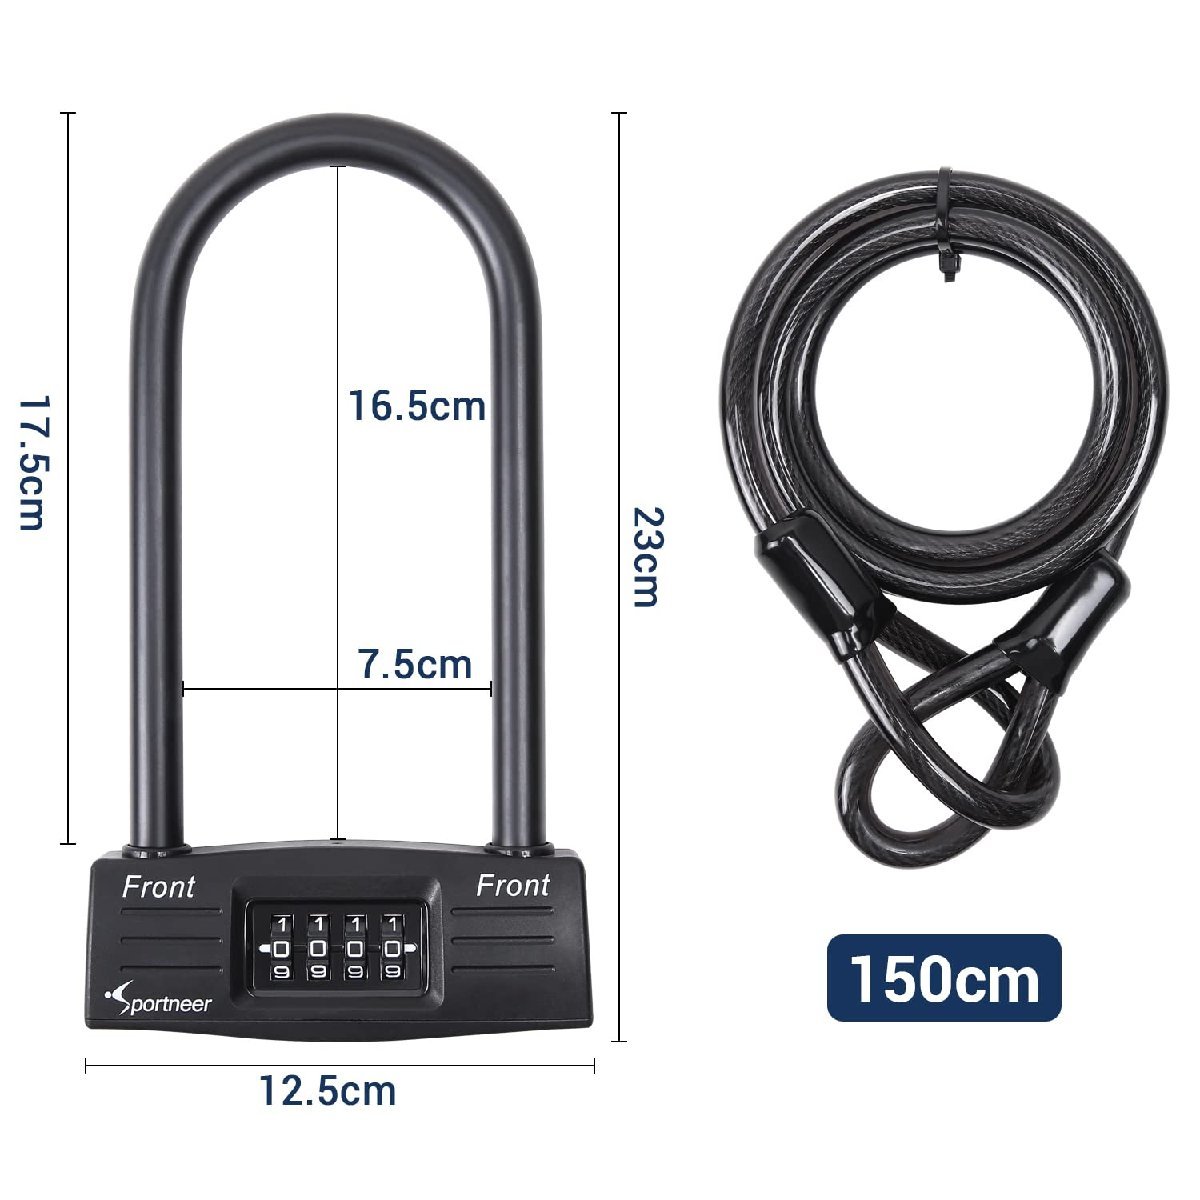  бесплатная доставка *Sportneer двойной блокировка велосипед для 150cm кабель имеется U -образный замок wire lock выдерживающий разрез противоугонное dial тип 